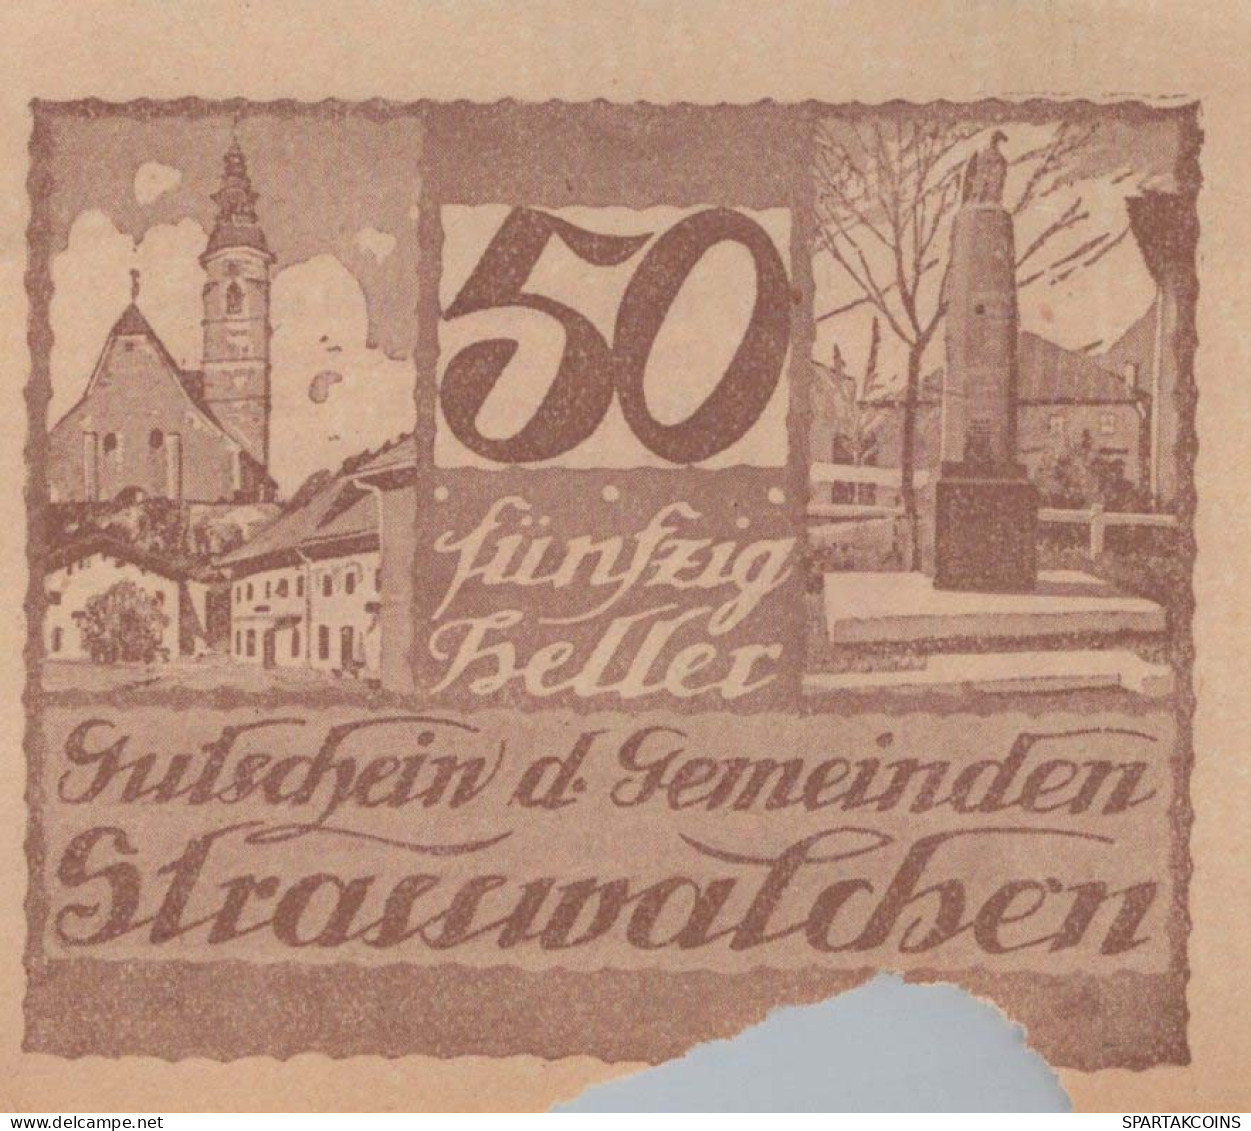 50 HELLER 1920 Stadt STRASSWALCHEN Salzburg Österreich Notgeld Banknote #PE869 - [11] Emisiones Locales